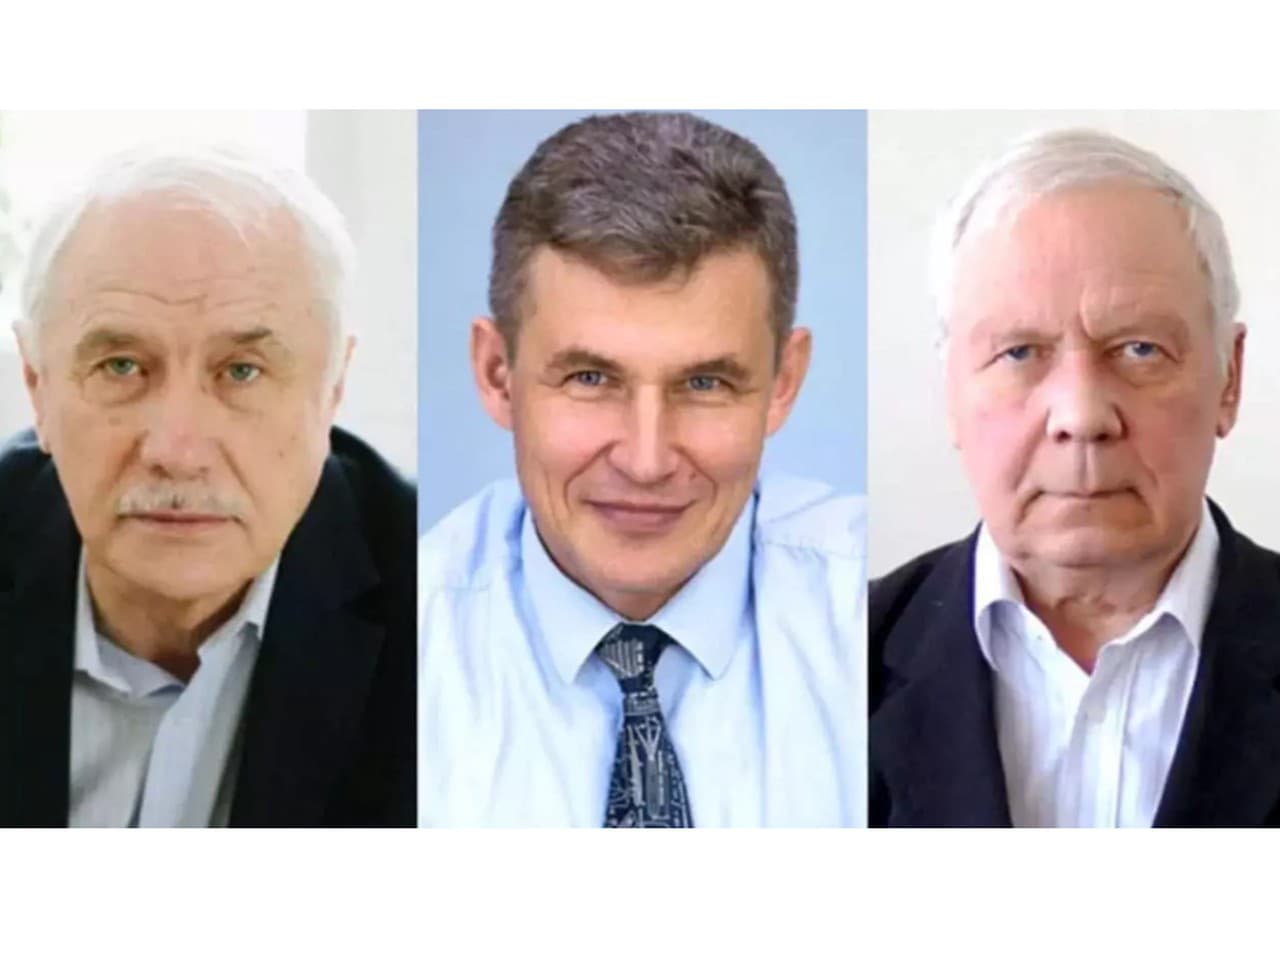 Ruskí vedci Valery Zveginčev, Anatolij Maslov a Alexander Šipljuk boli obvinení z vlastizrady